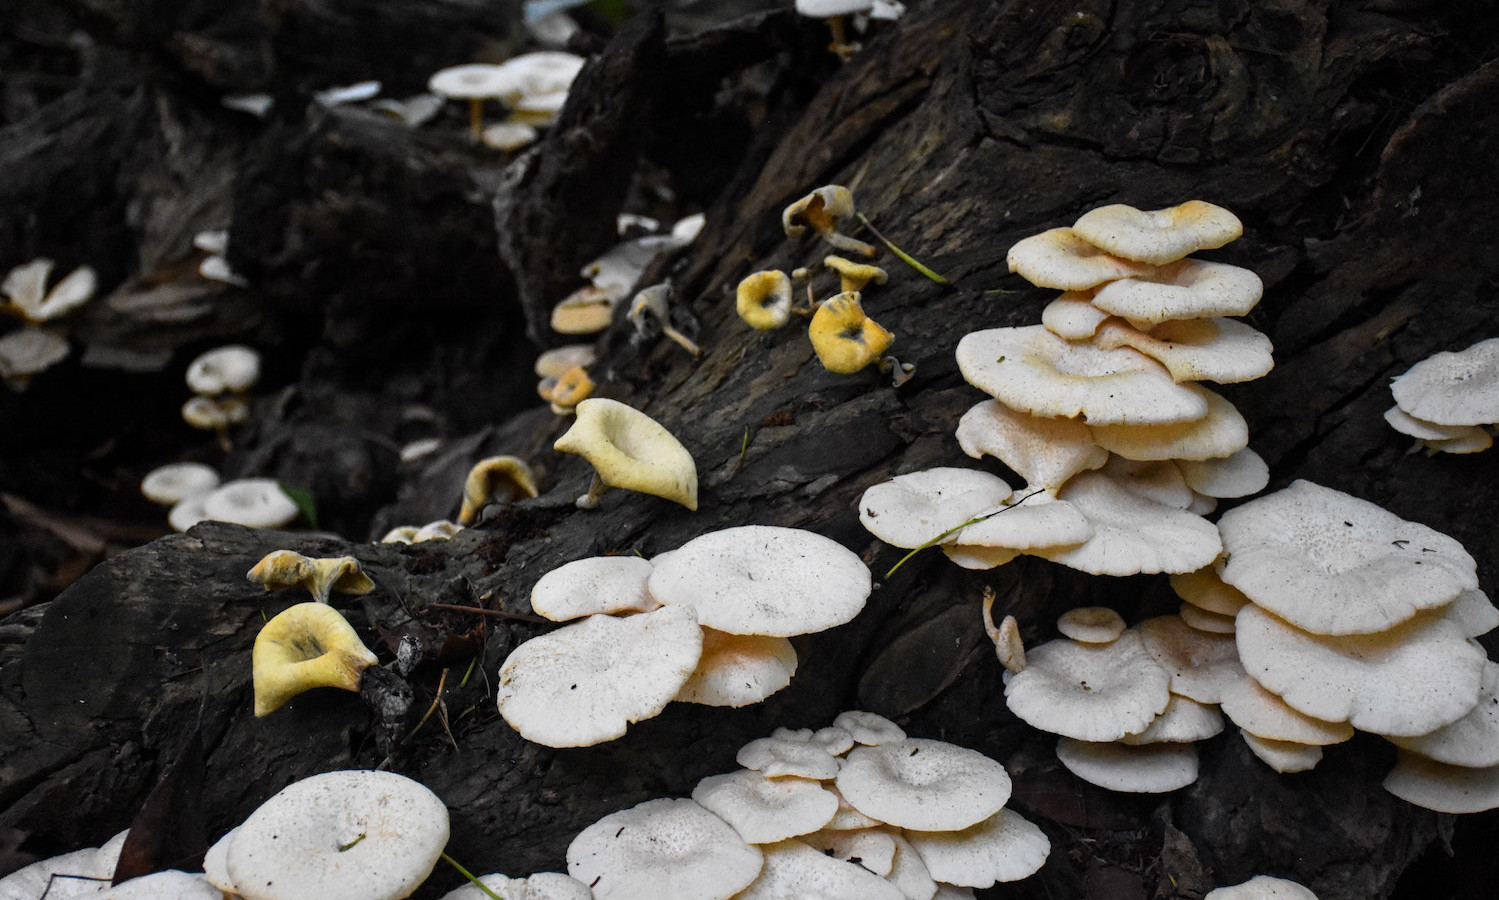 加州森林大火后,生态学家正在使用蘑菇从污染的土壤中提取毒素过程被称为“此类“茵核降解”。